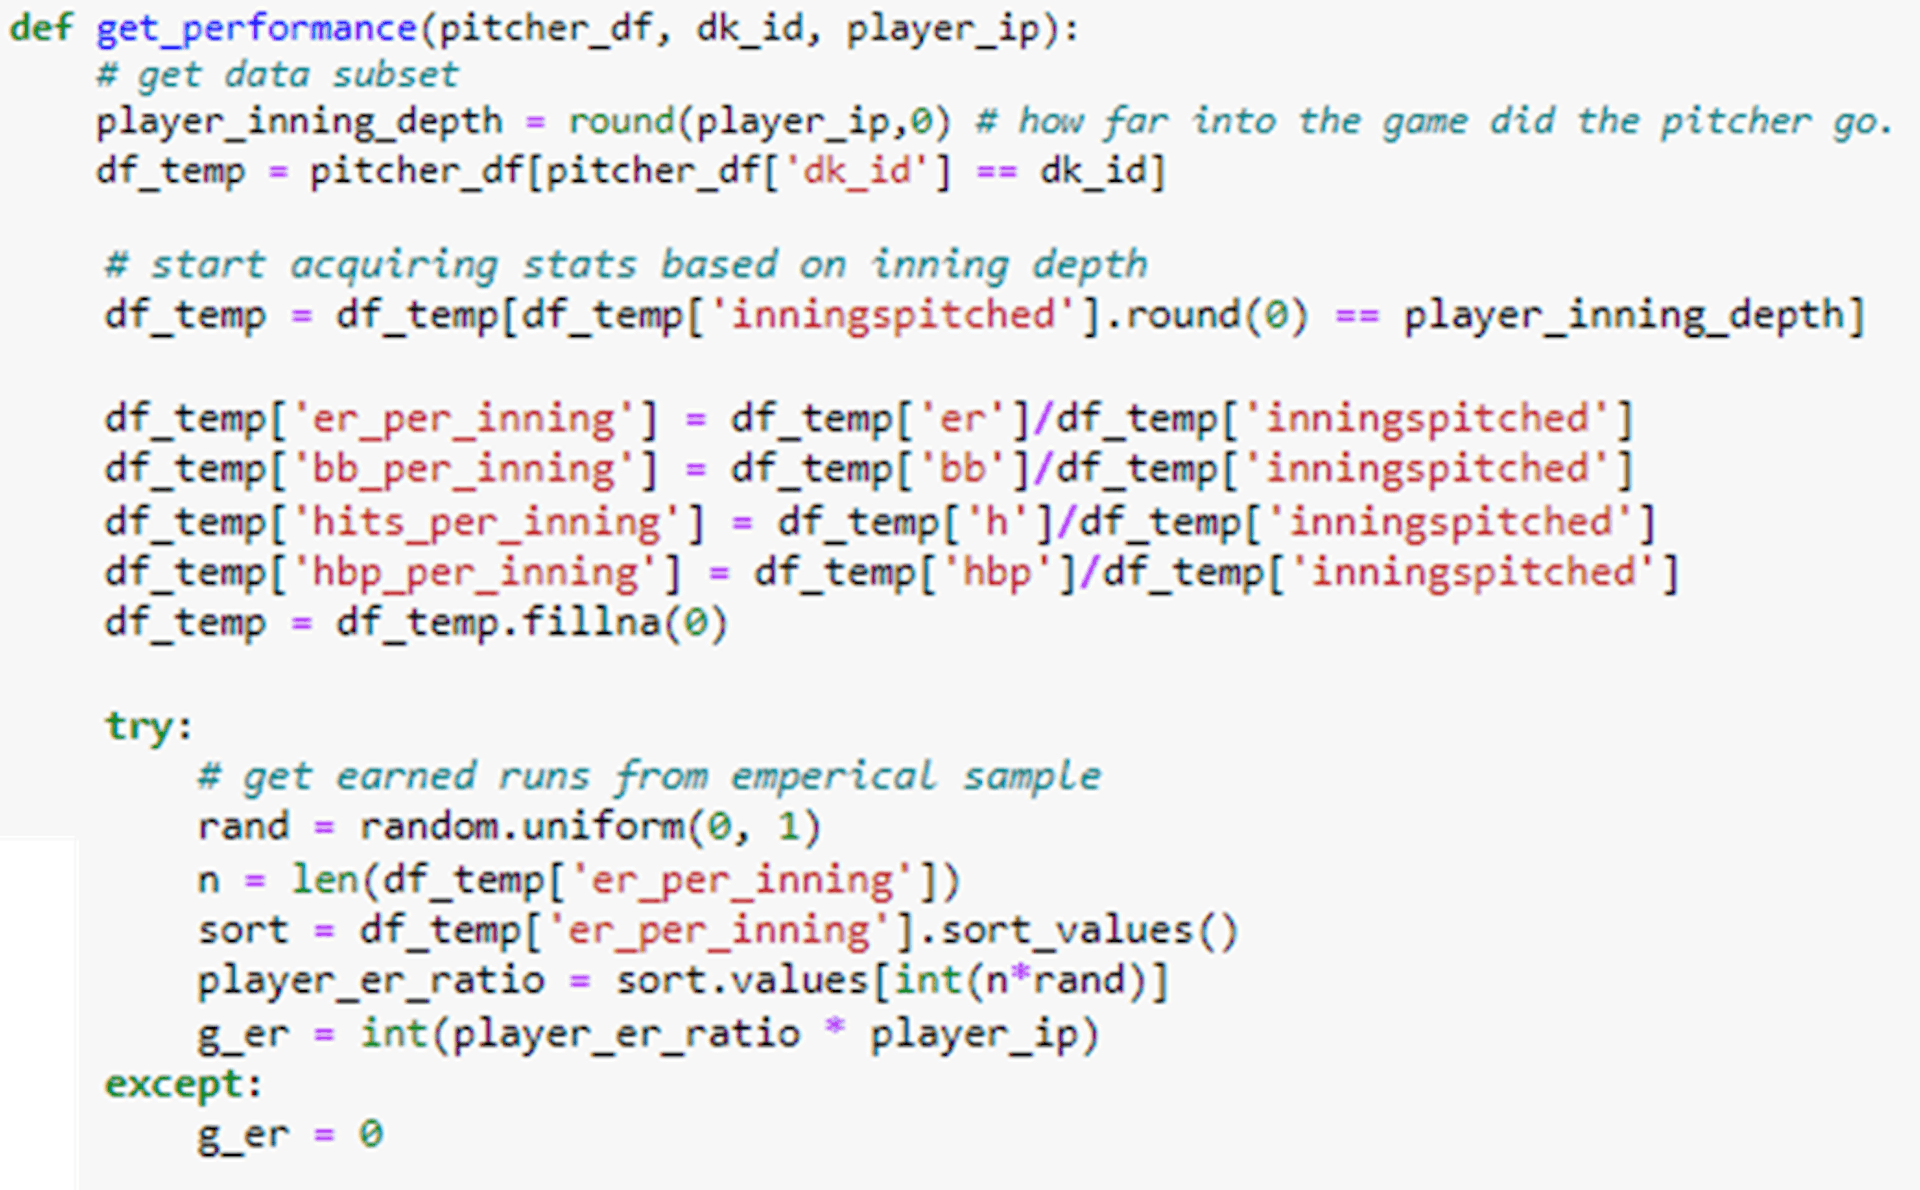 Imagen del autor: código de Python para devolver carreras ganadas en función de las entradas lanzadas.